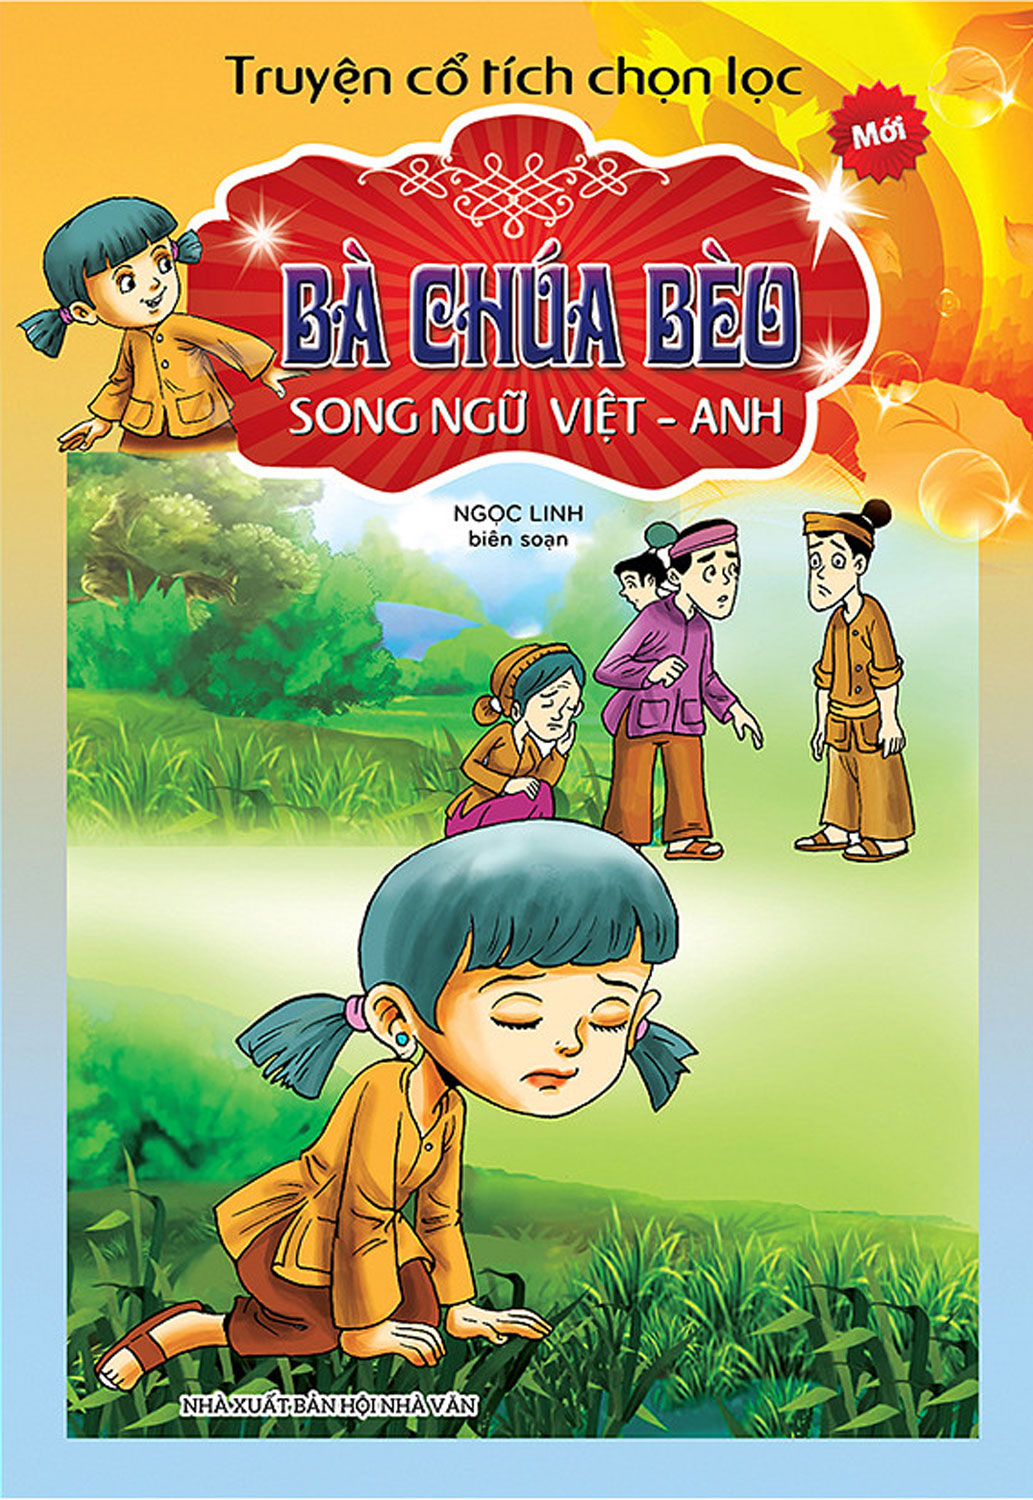 Truyện Cổ Tích Chọn Lọc Song Ngữ Việt Anh - Bà Chúa Bèo